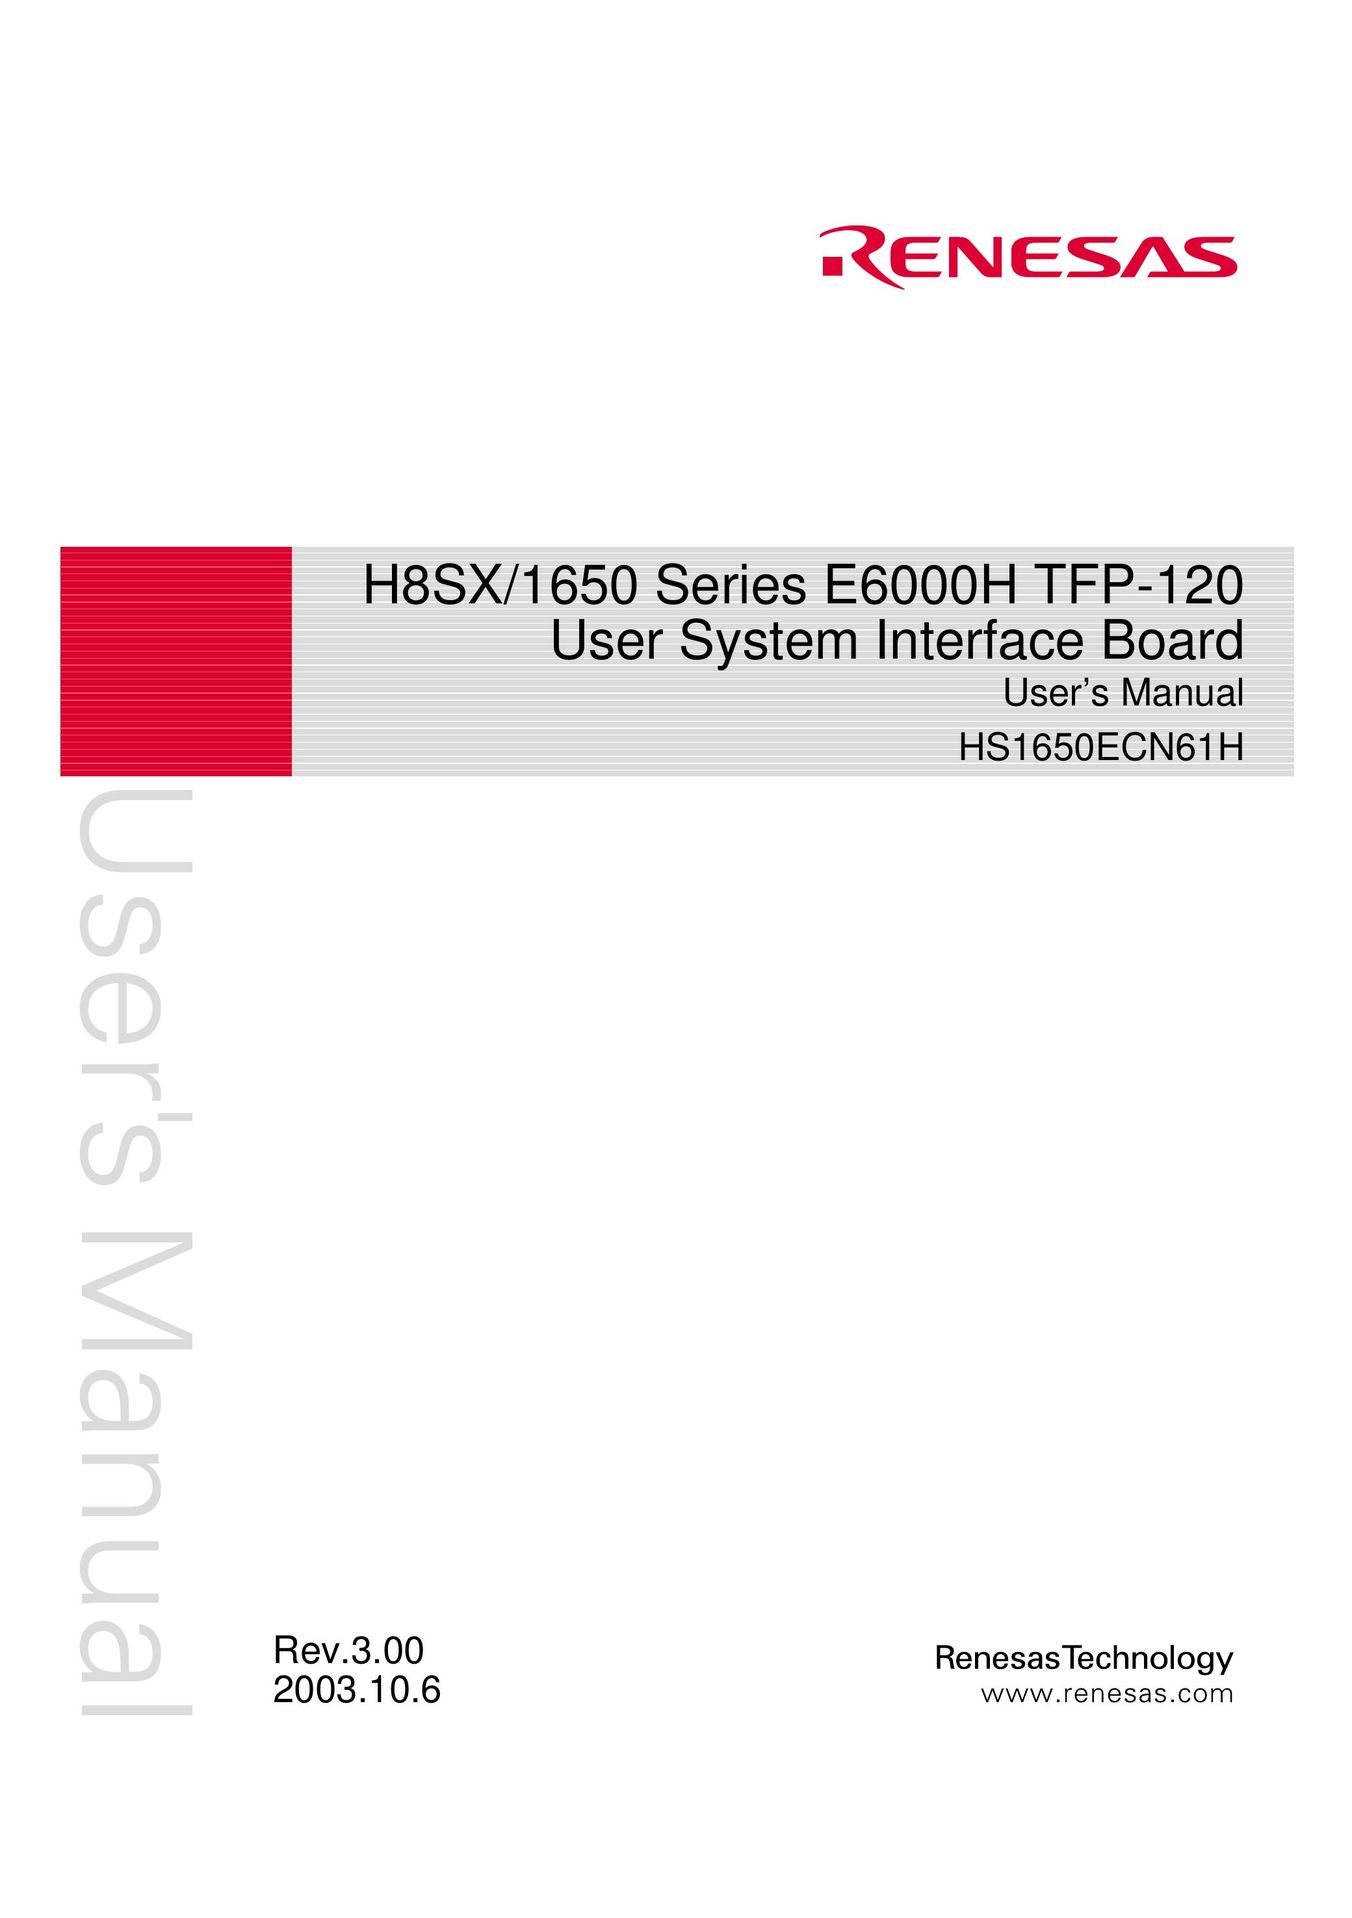 Renesas HS1650ECN61H Network Card User Manual